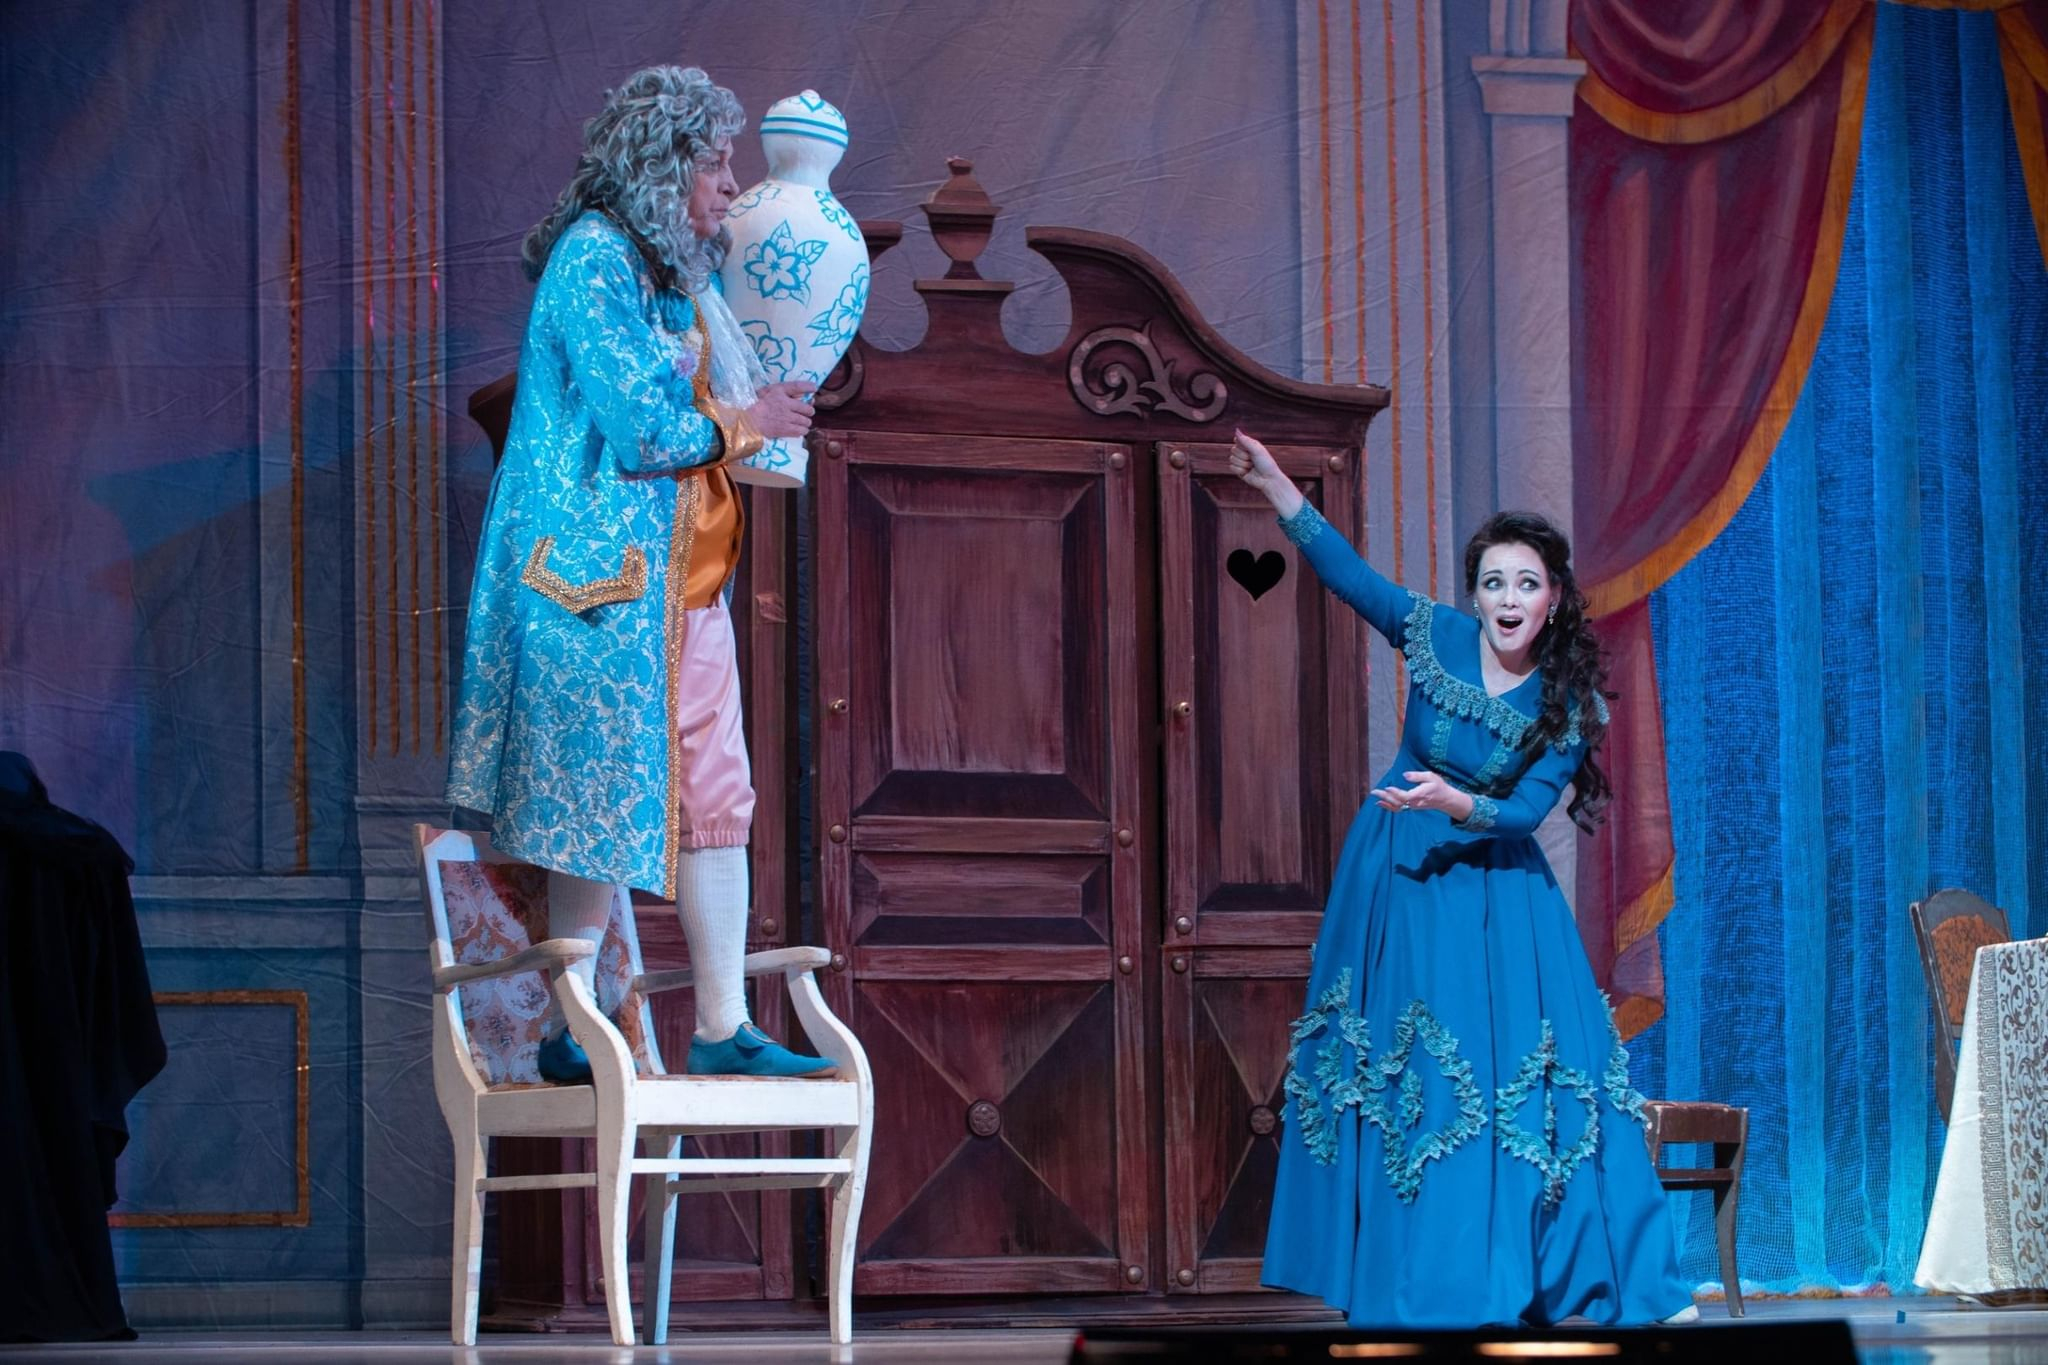 В Чебоксарах фестиваль оперетты откроется премьерой «Баядера»